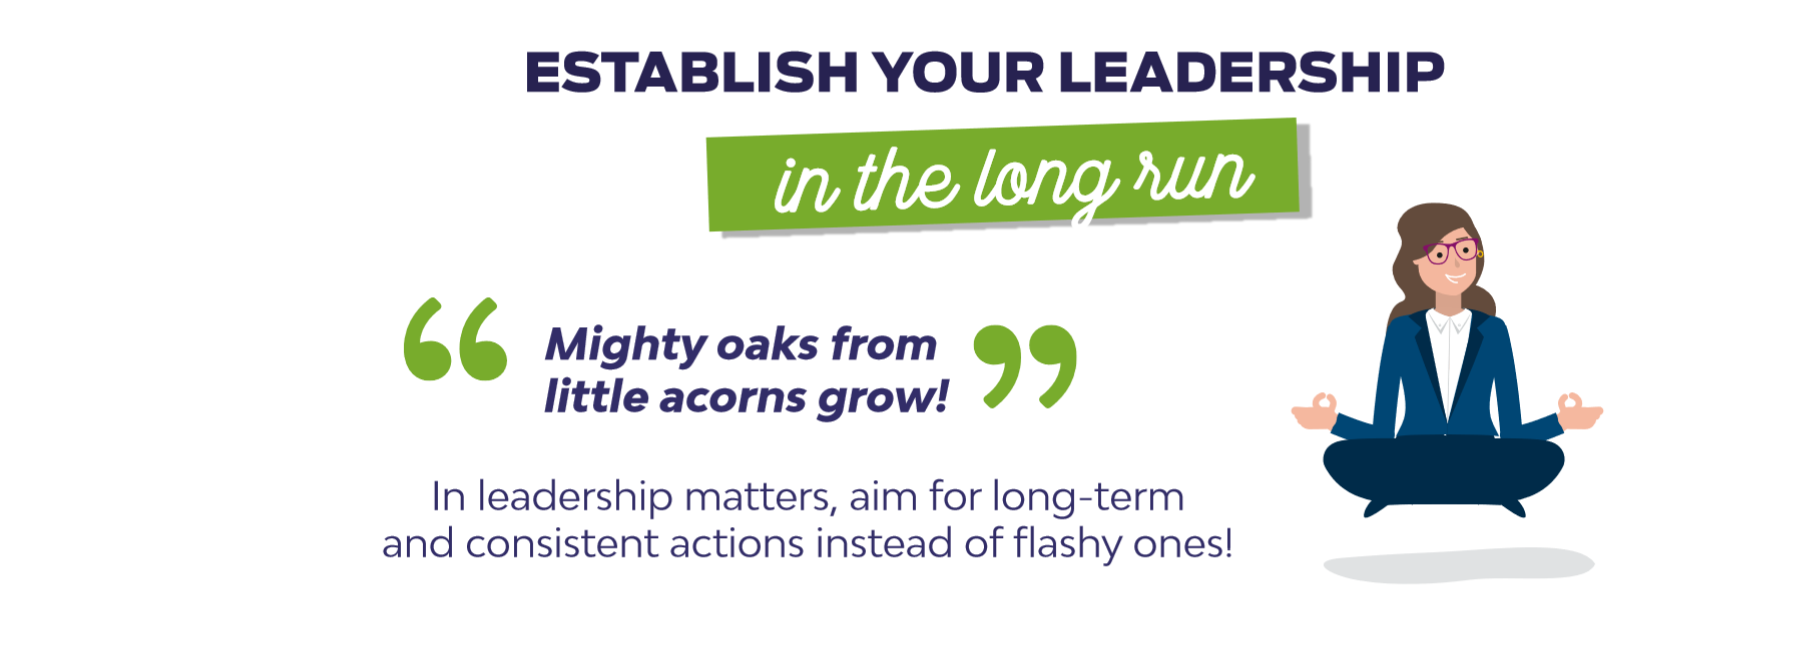 Establish your leadership in the long run - ©Icsi - Credit: BPgraphisme